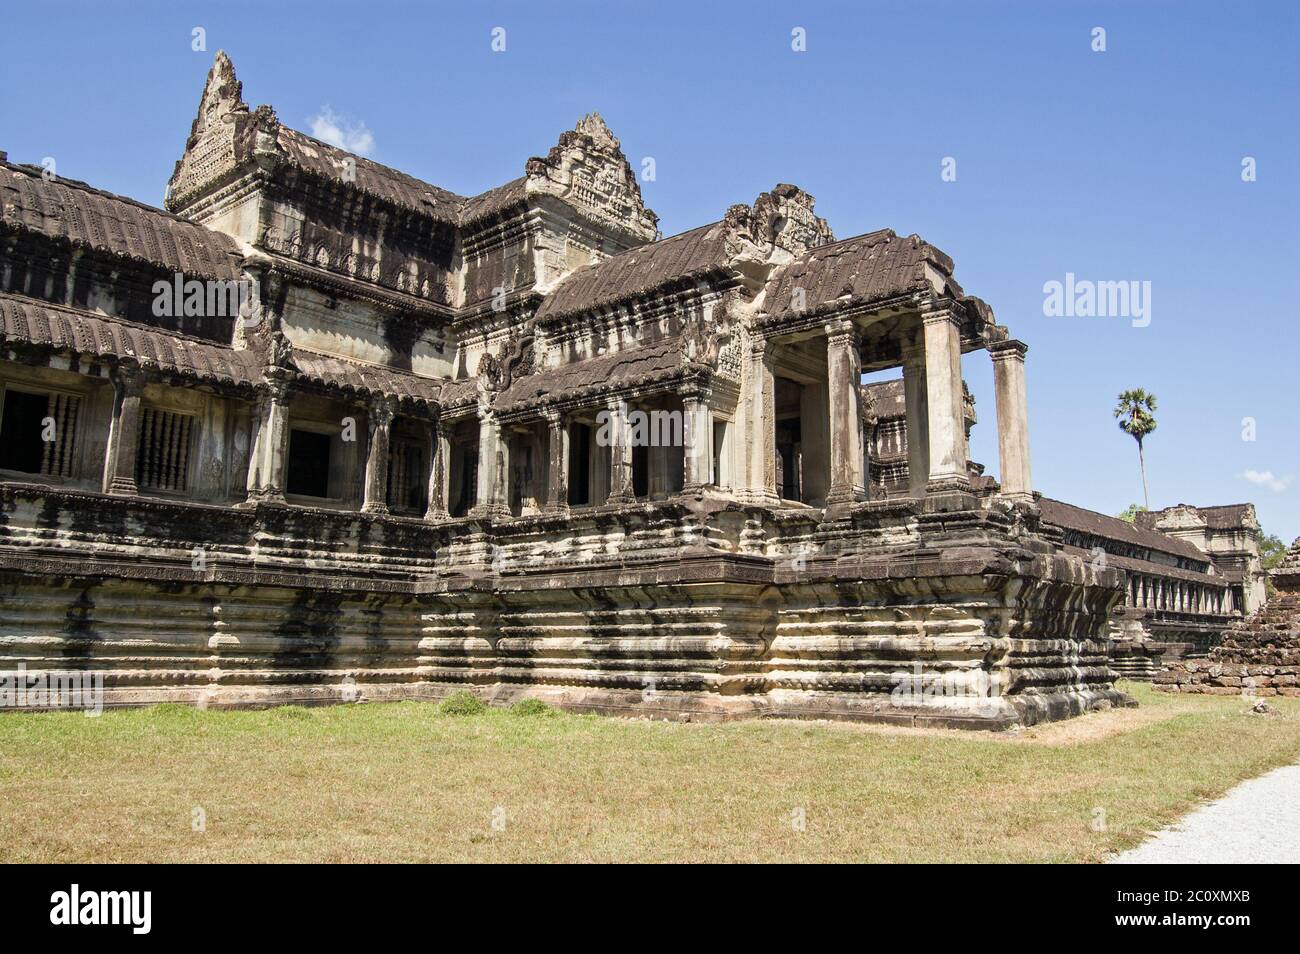 Entrata rialzata al tempio di Angkor Wat, Siem Reap, Cambogia. Questa antica struttura Khmer è stata progettata in modo che i adoratori possano arrivare con un elefante. Foto Stock